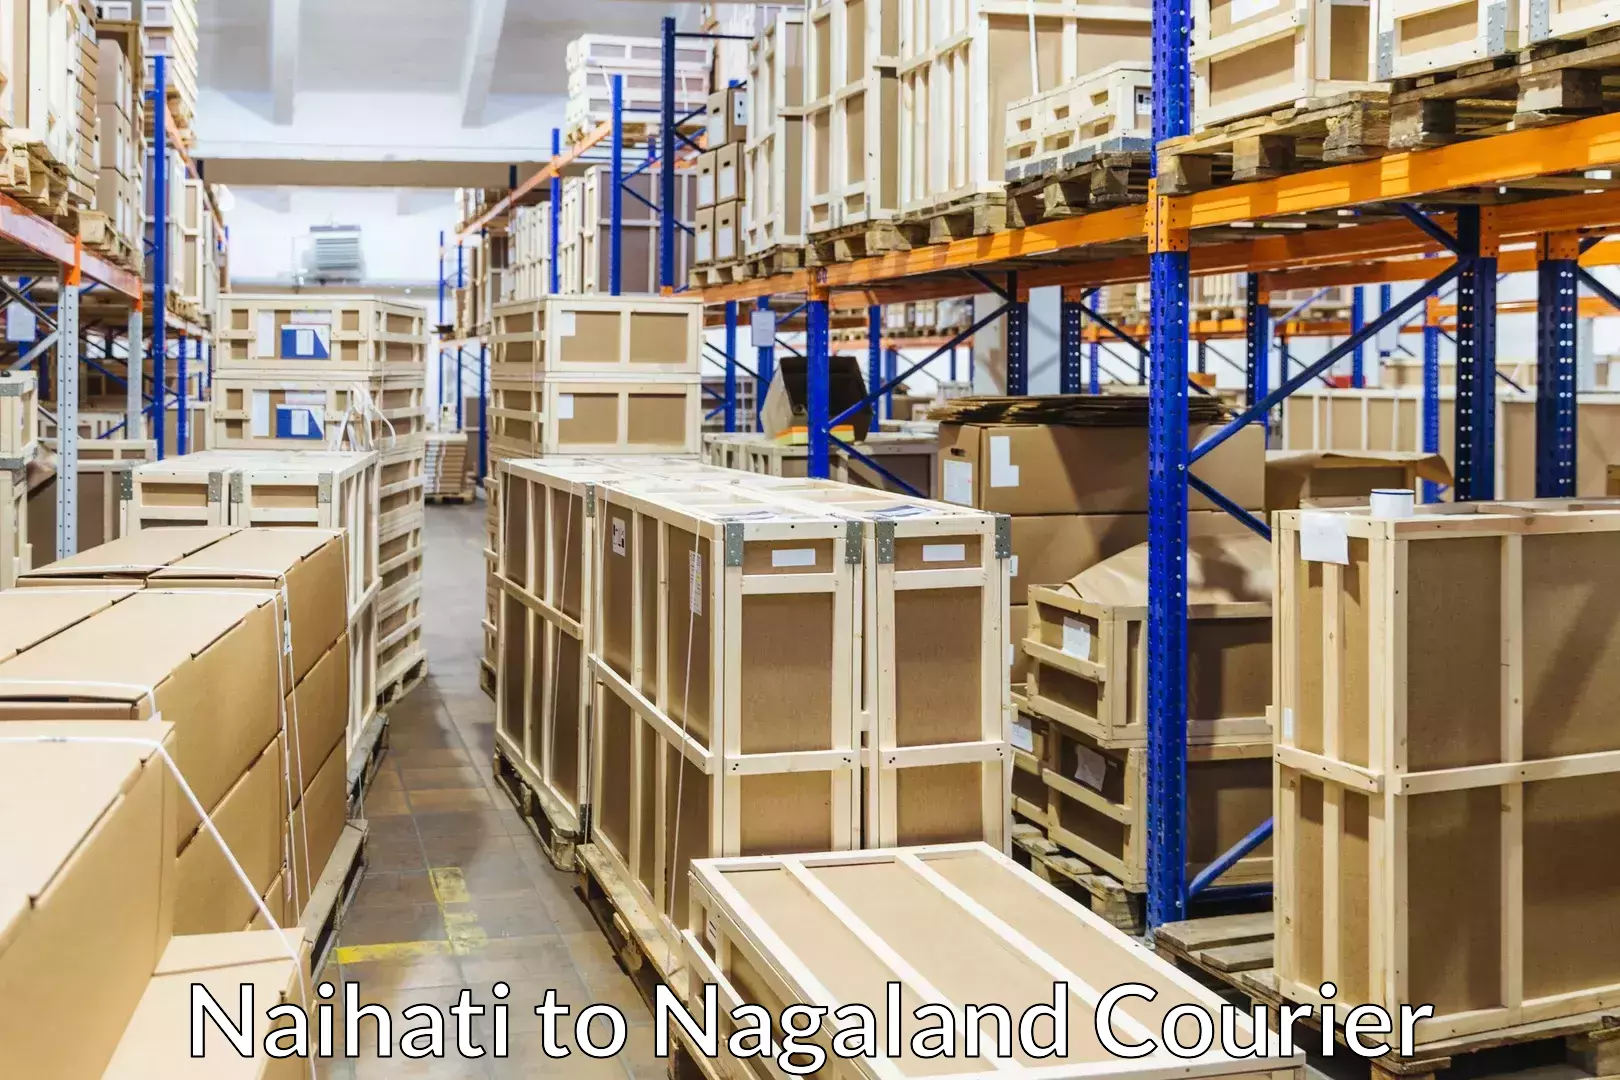 Advanced moving solutions Naihati to Nagaland